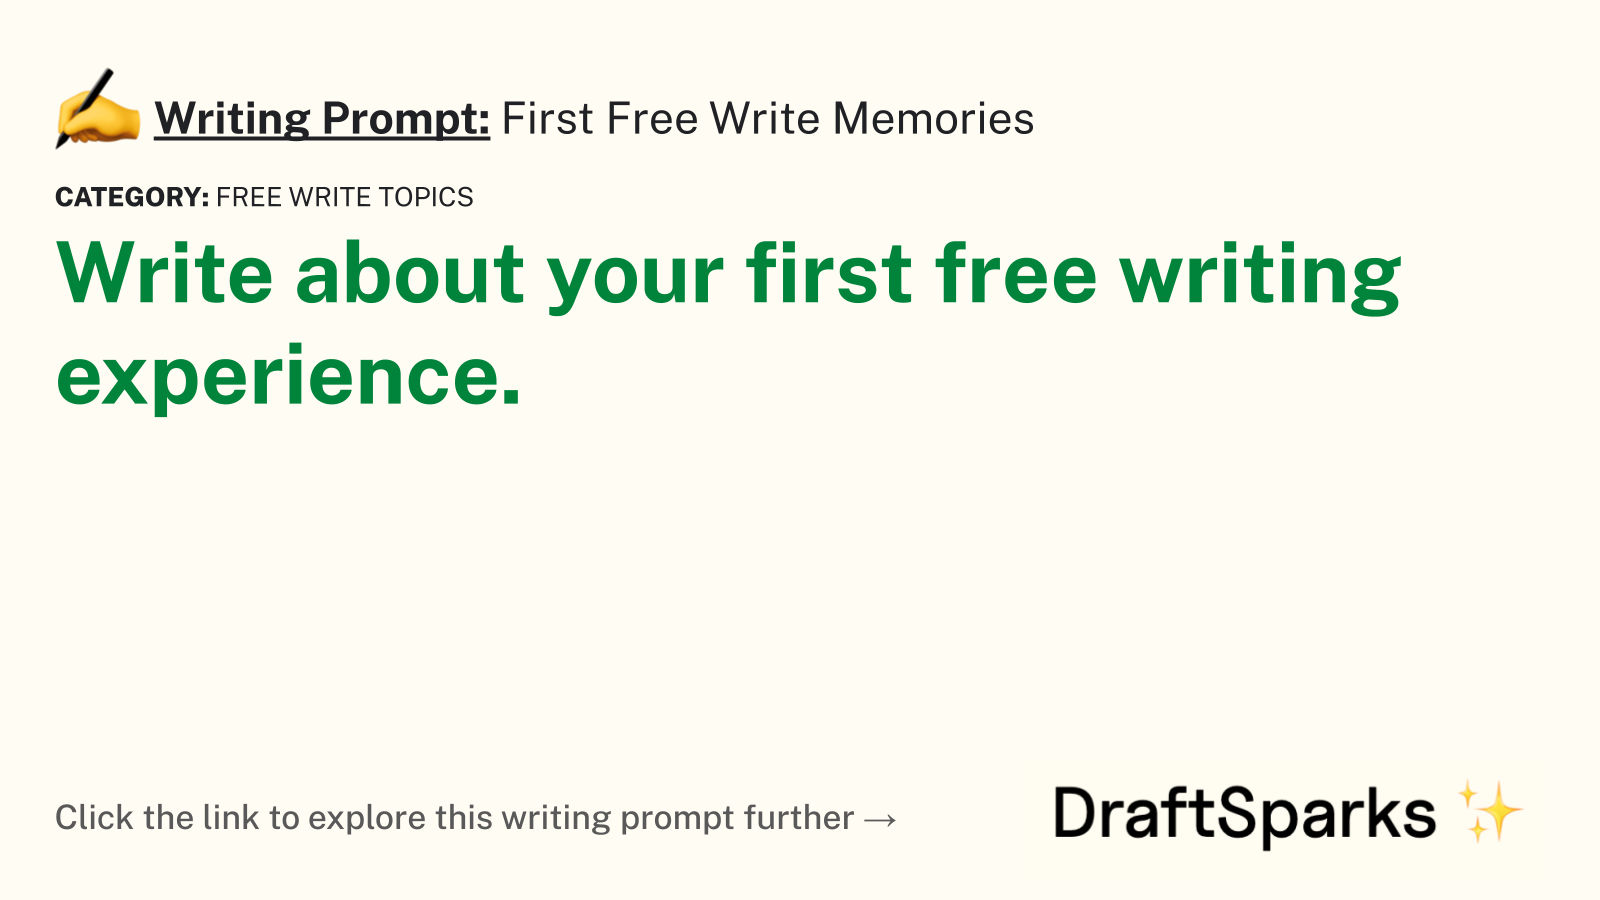 First Free Write Memories